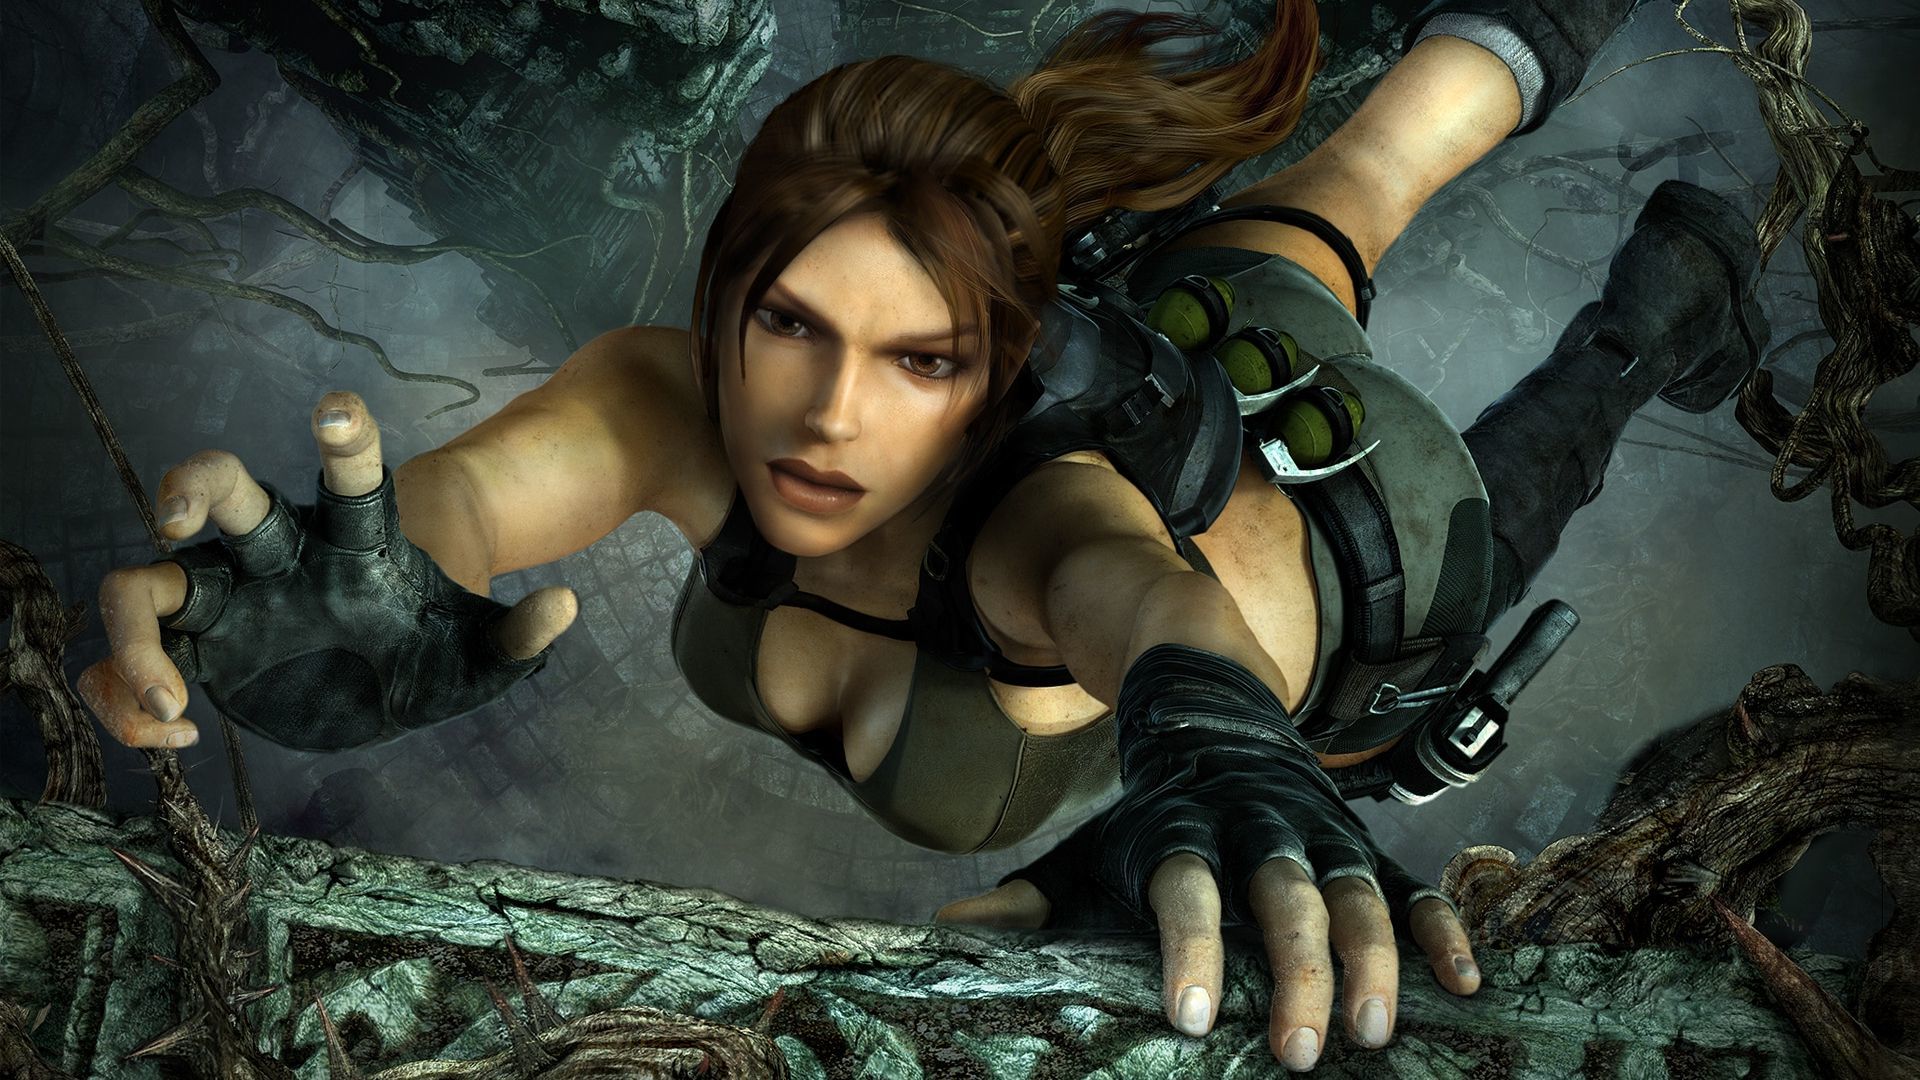 Lara-croft-in-tomb-raider-underworld-1080p-game-de by kebzuref on DeviantArt